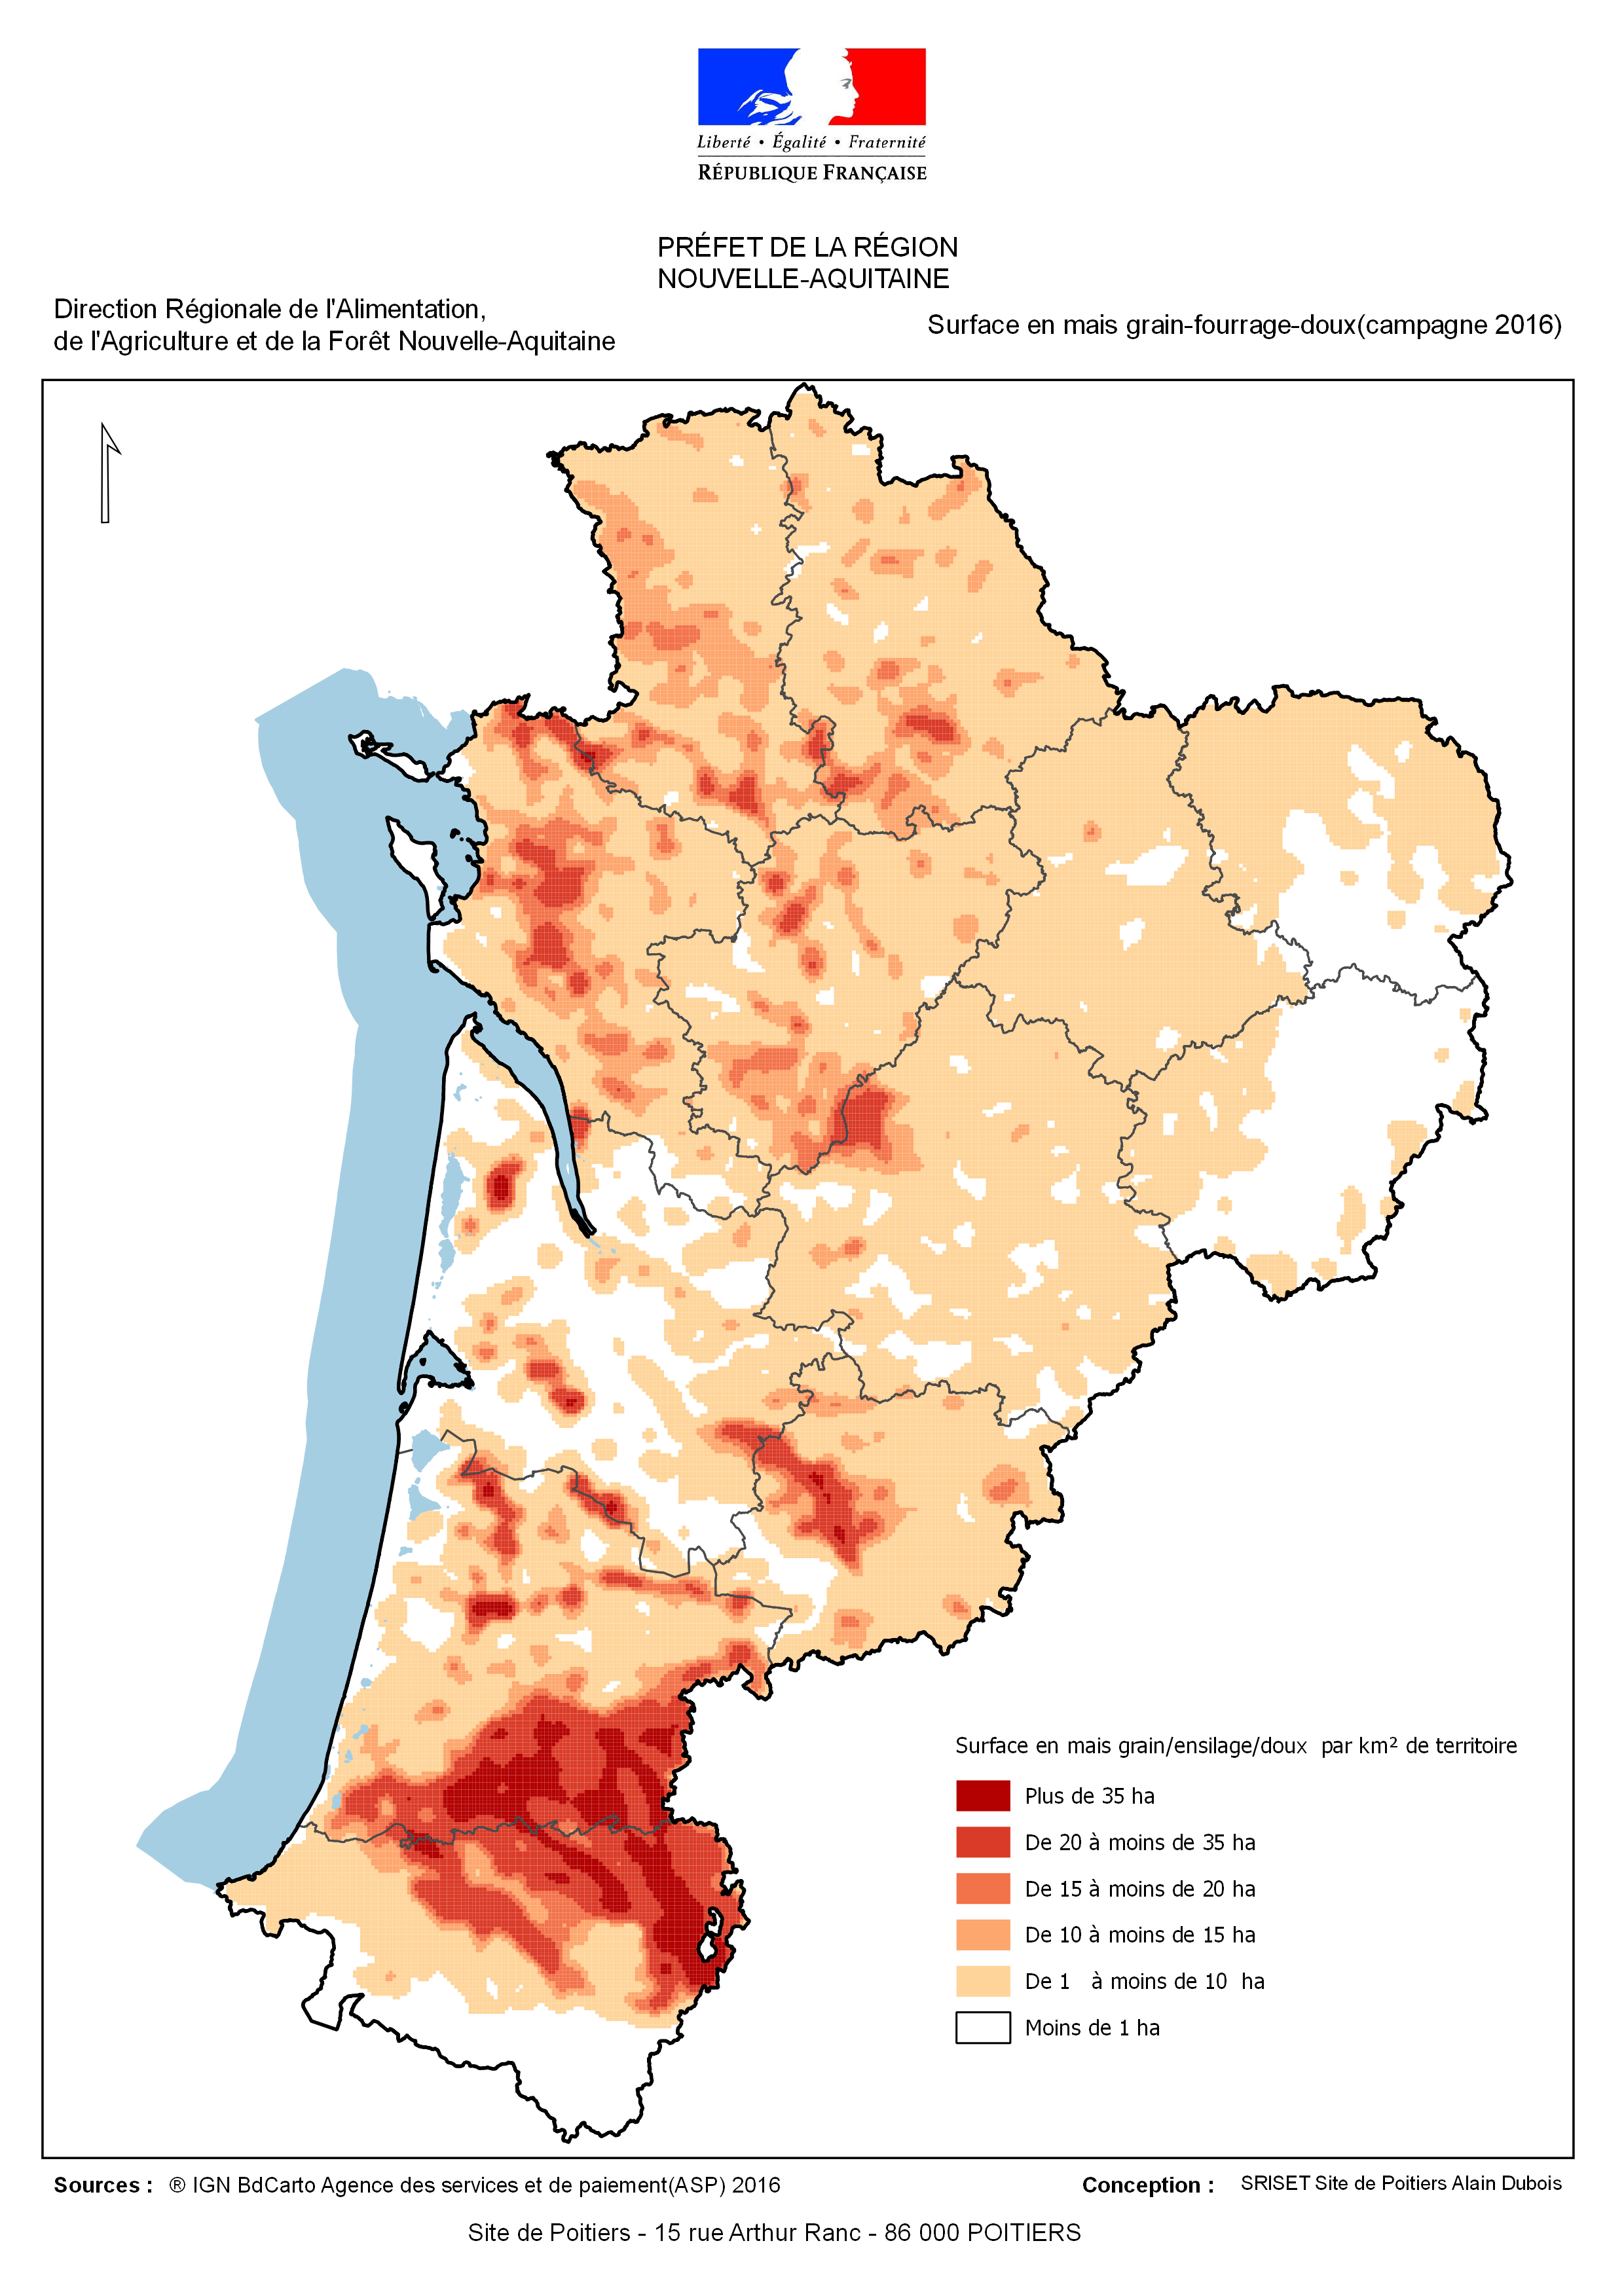 Nouvelle Aquitaine : Les surfaces semées en mais grain-semence durant la campagne 2016